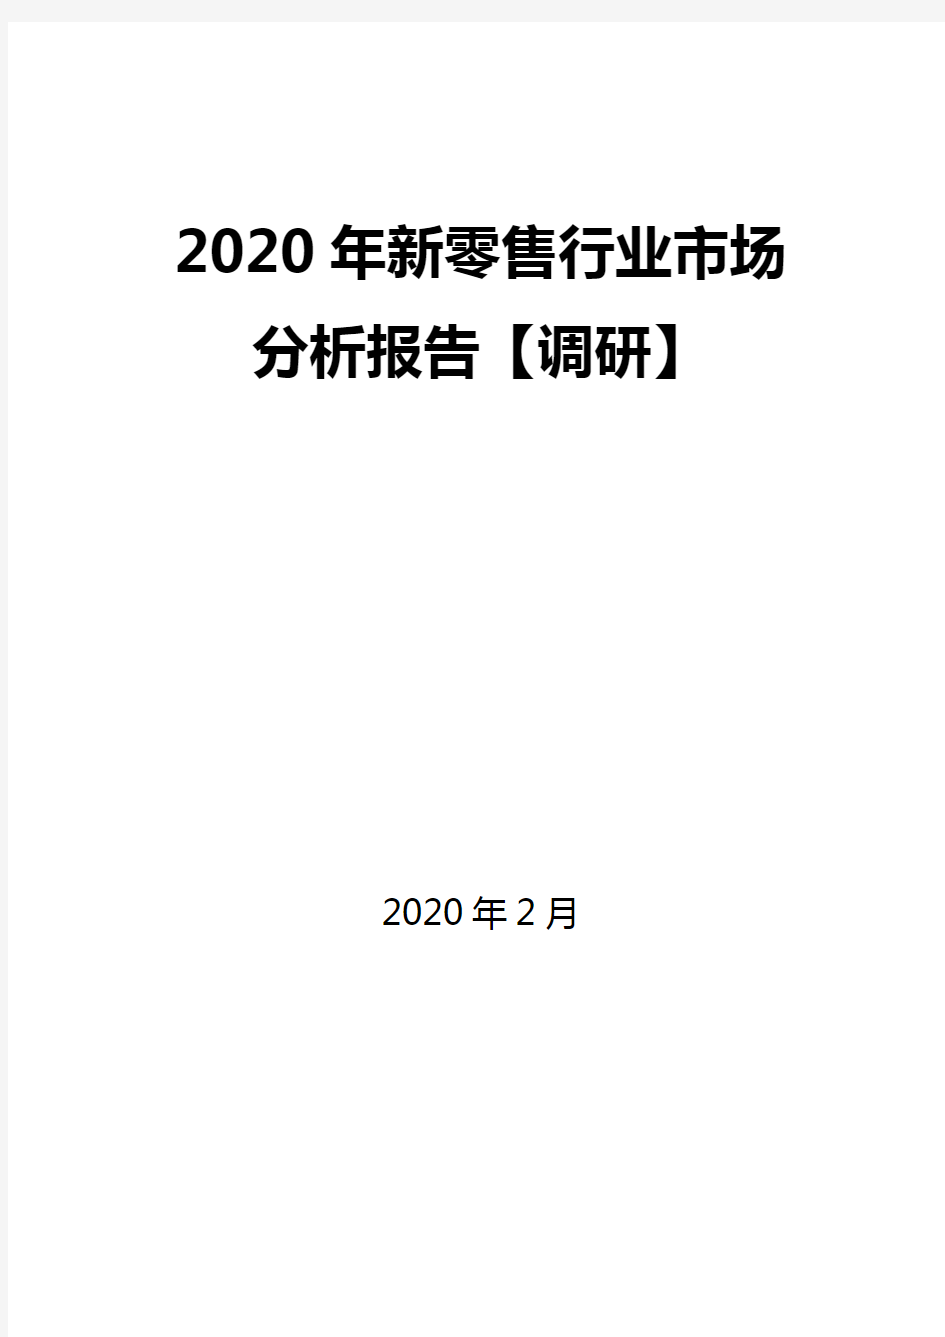 2020年新零售行业市场分析报告【调研】